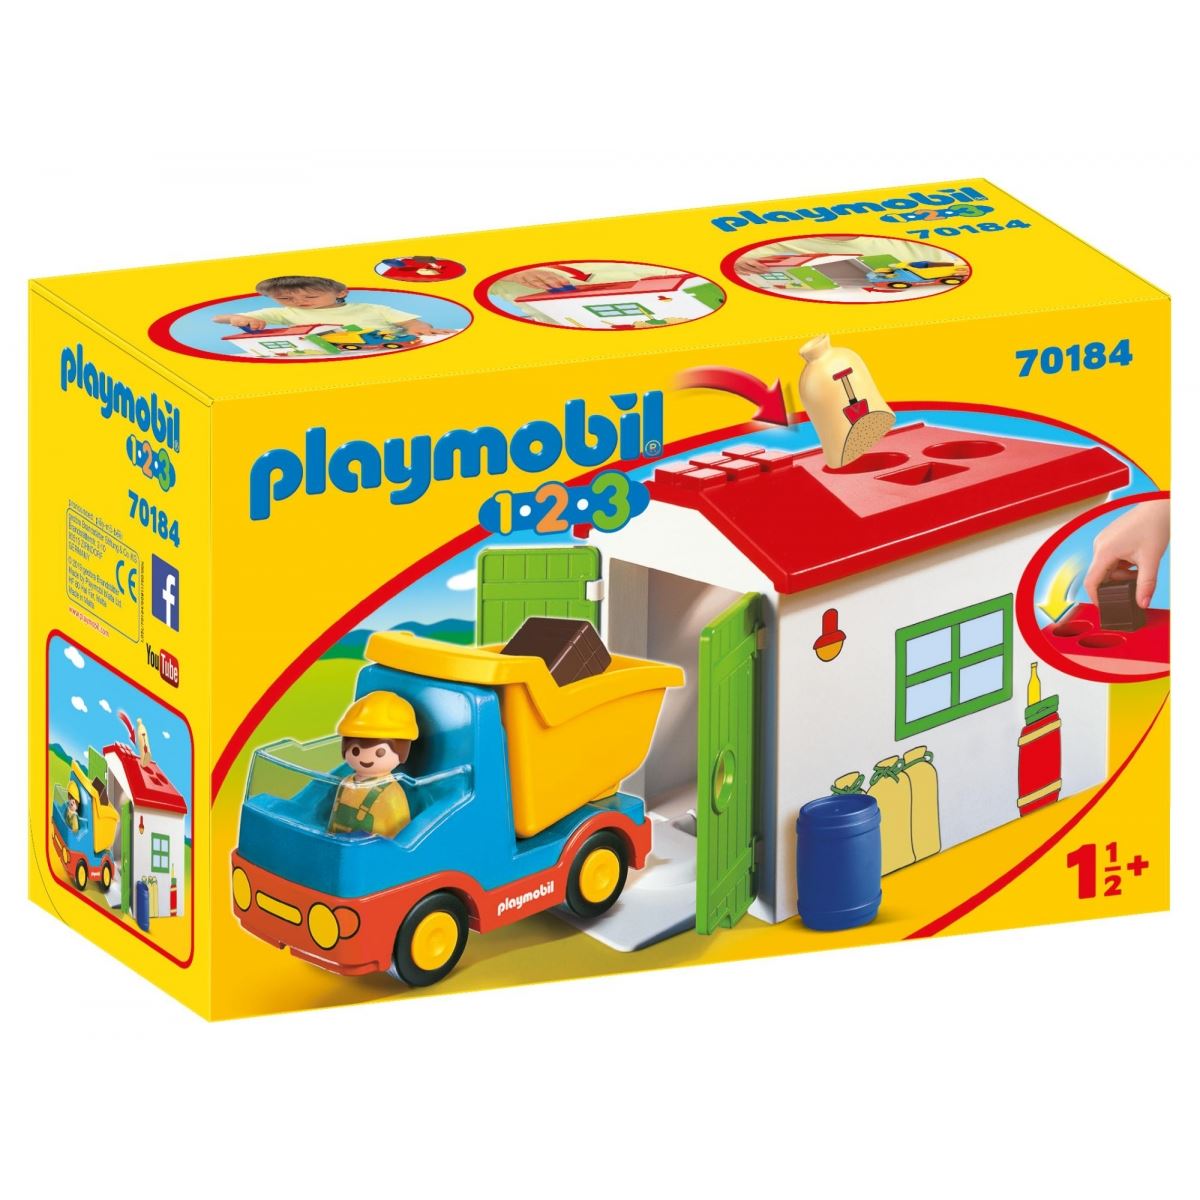 Playmobil 1.2.3 70184 Ouvrier avec camion et garage - Playmobil